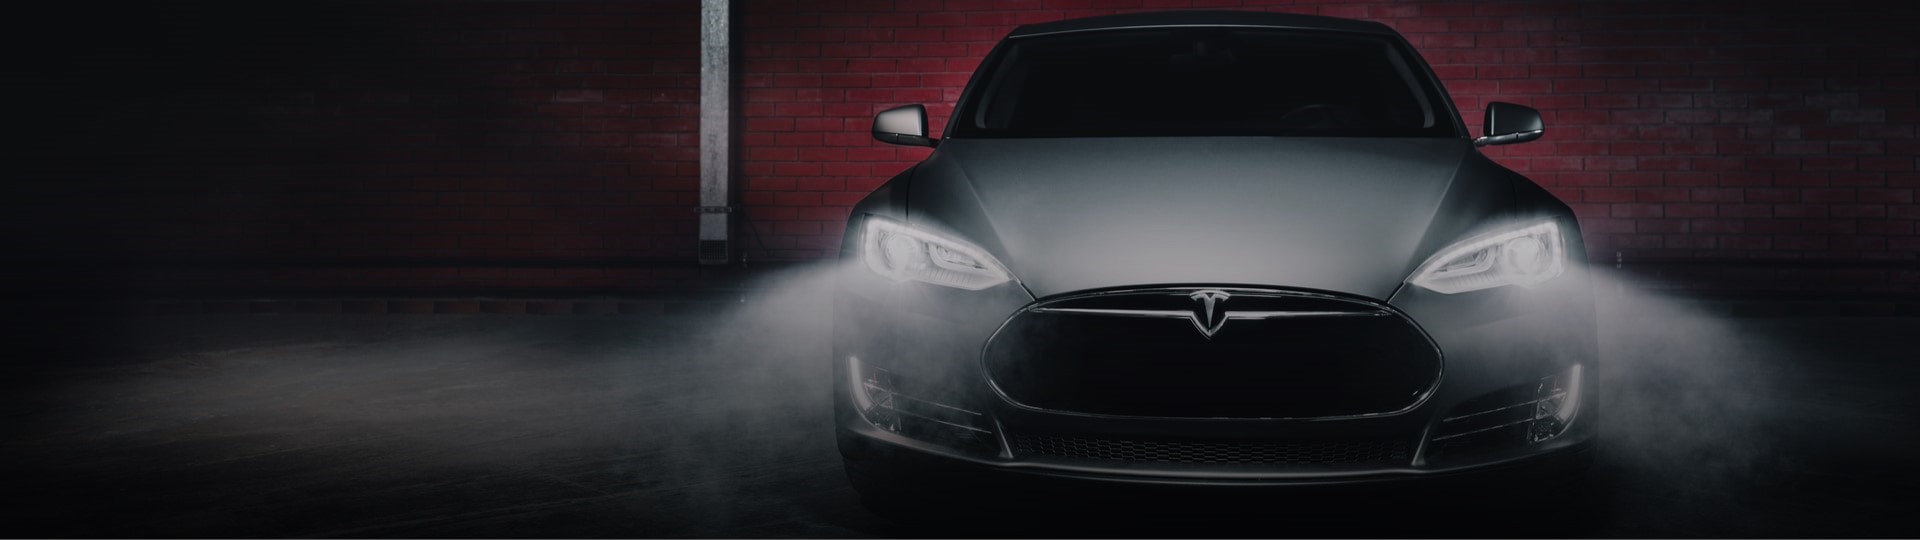 Tesla podle Muska nevylučuje spojení s jinou automobilkou